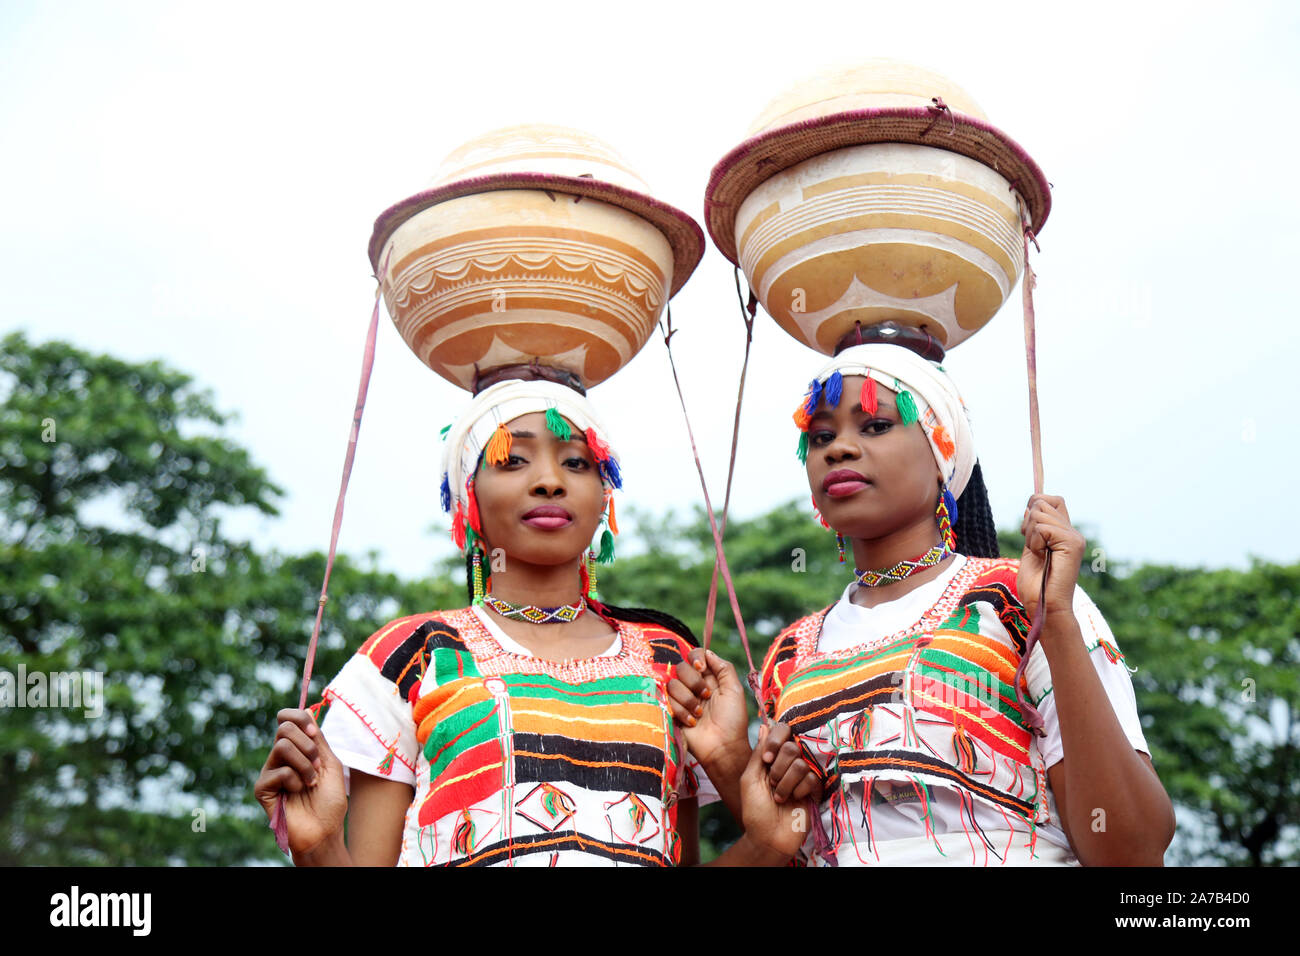 La tribu Hausa/Fulani du nord du Nigeria présente sa riche culture lors du Festival national des arts et de la culture (NAFEST) dans l'État d'Edo, au Nigeria. Banque D'Images